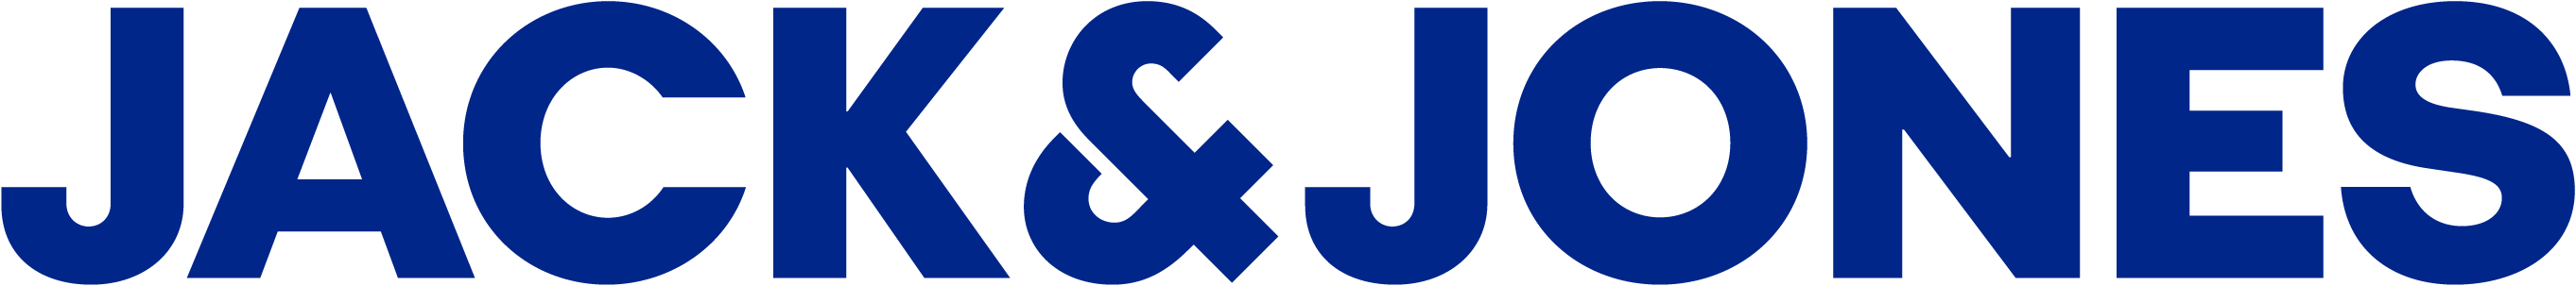 Logo shop